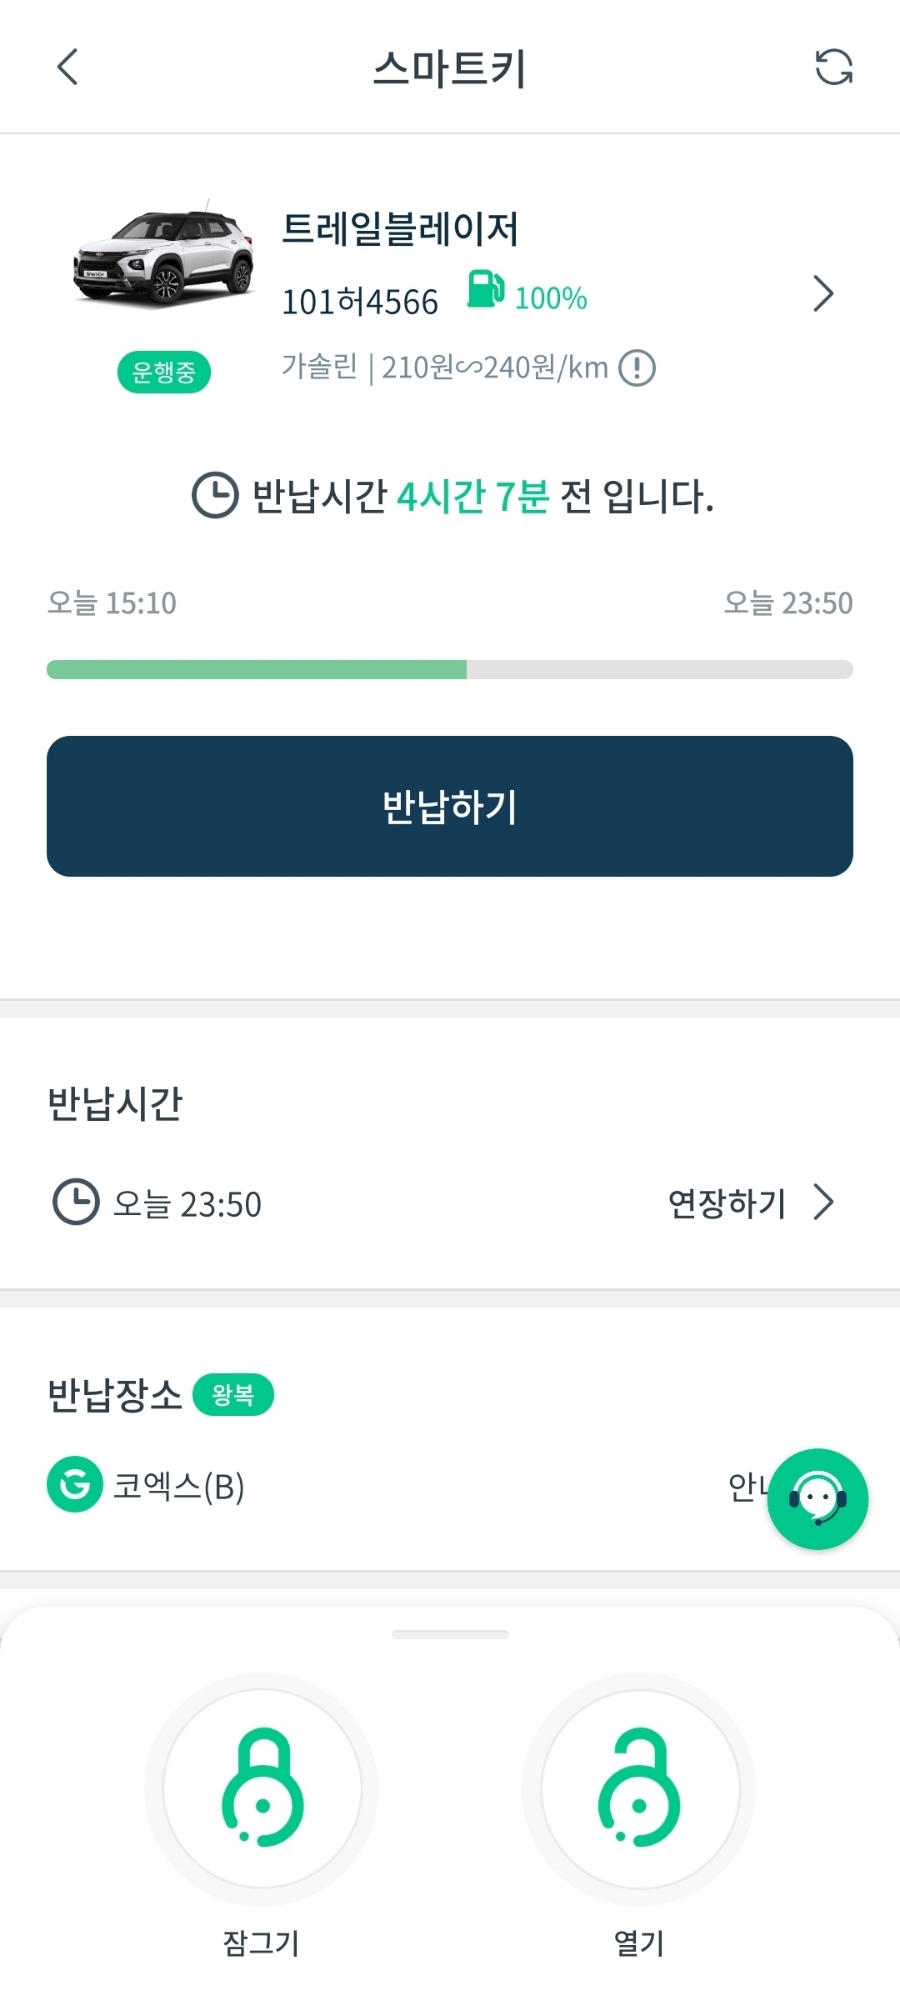 강남구 가성비 렌트카 그린카 타고 근교 드라이브!